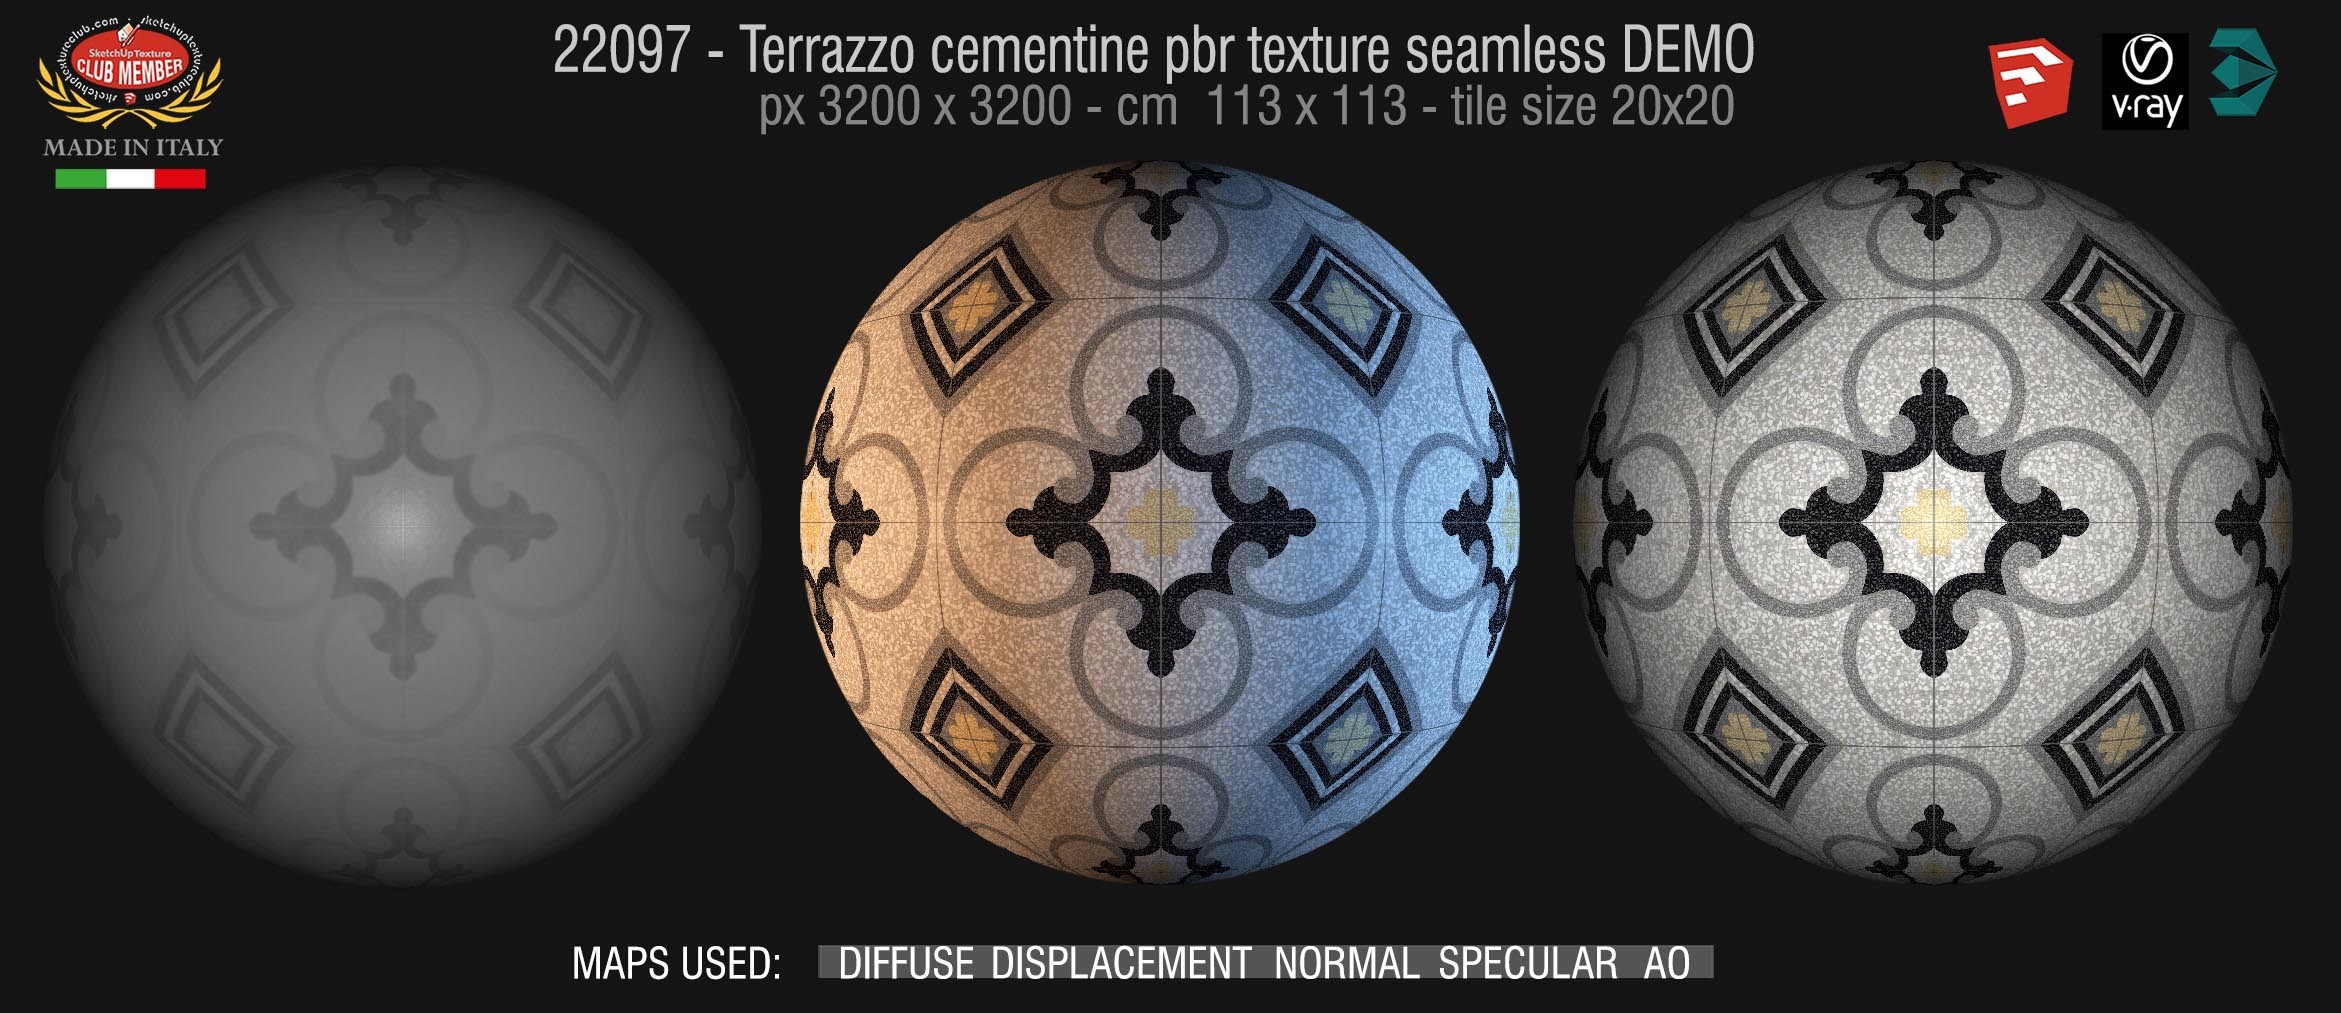 22097 / 37 terrazzo floor cementine style pbr texture seamless DEMO /  D_Segni Scaglie 20x20 size by Marazzi